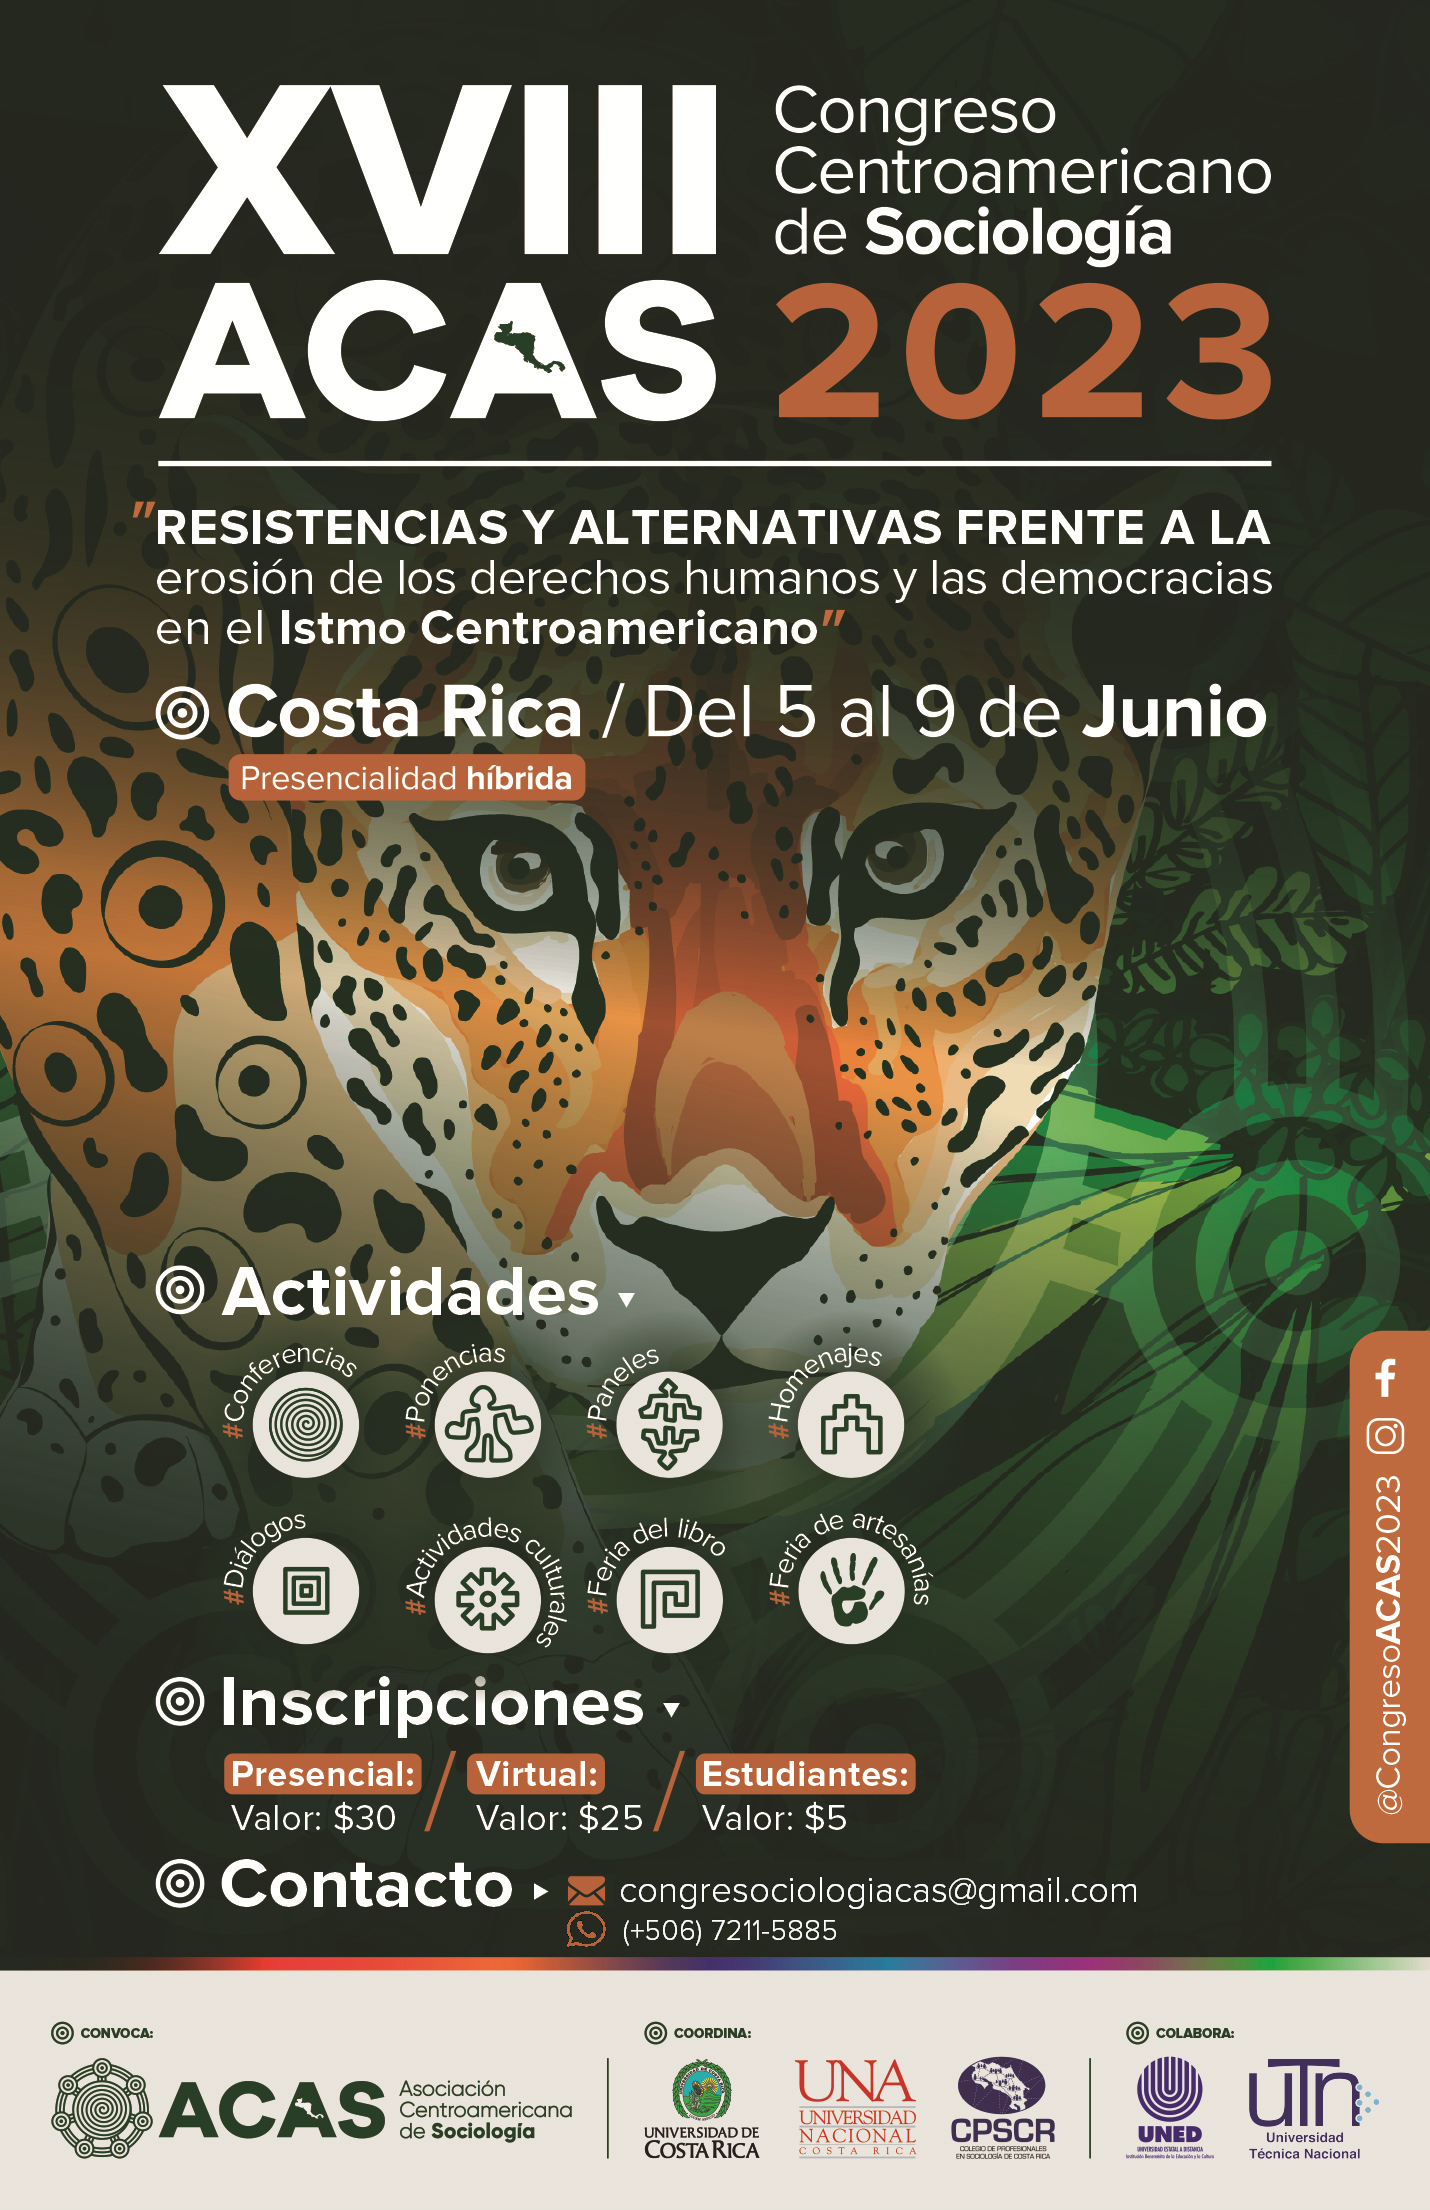 XVIII Congreso Centroamericano de Sociología (ACAS) 2023